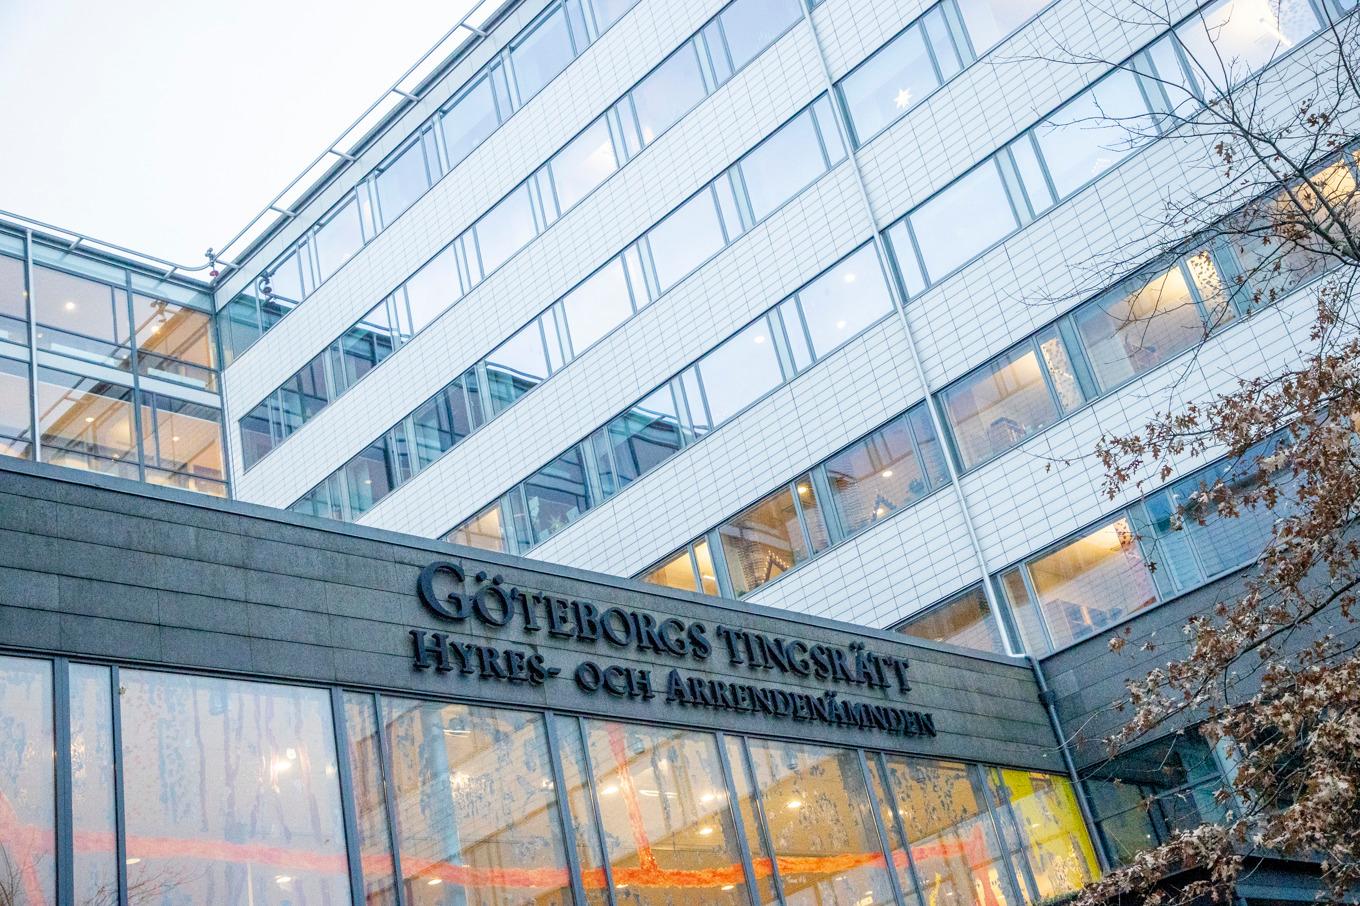 En man åtalas i Göteborg, misstänkt för grova ekobrott. Arkivbild. Foto: Adam Ihse/TT